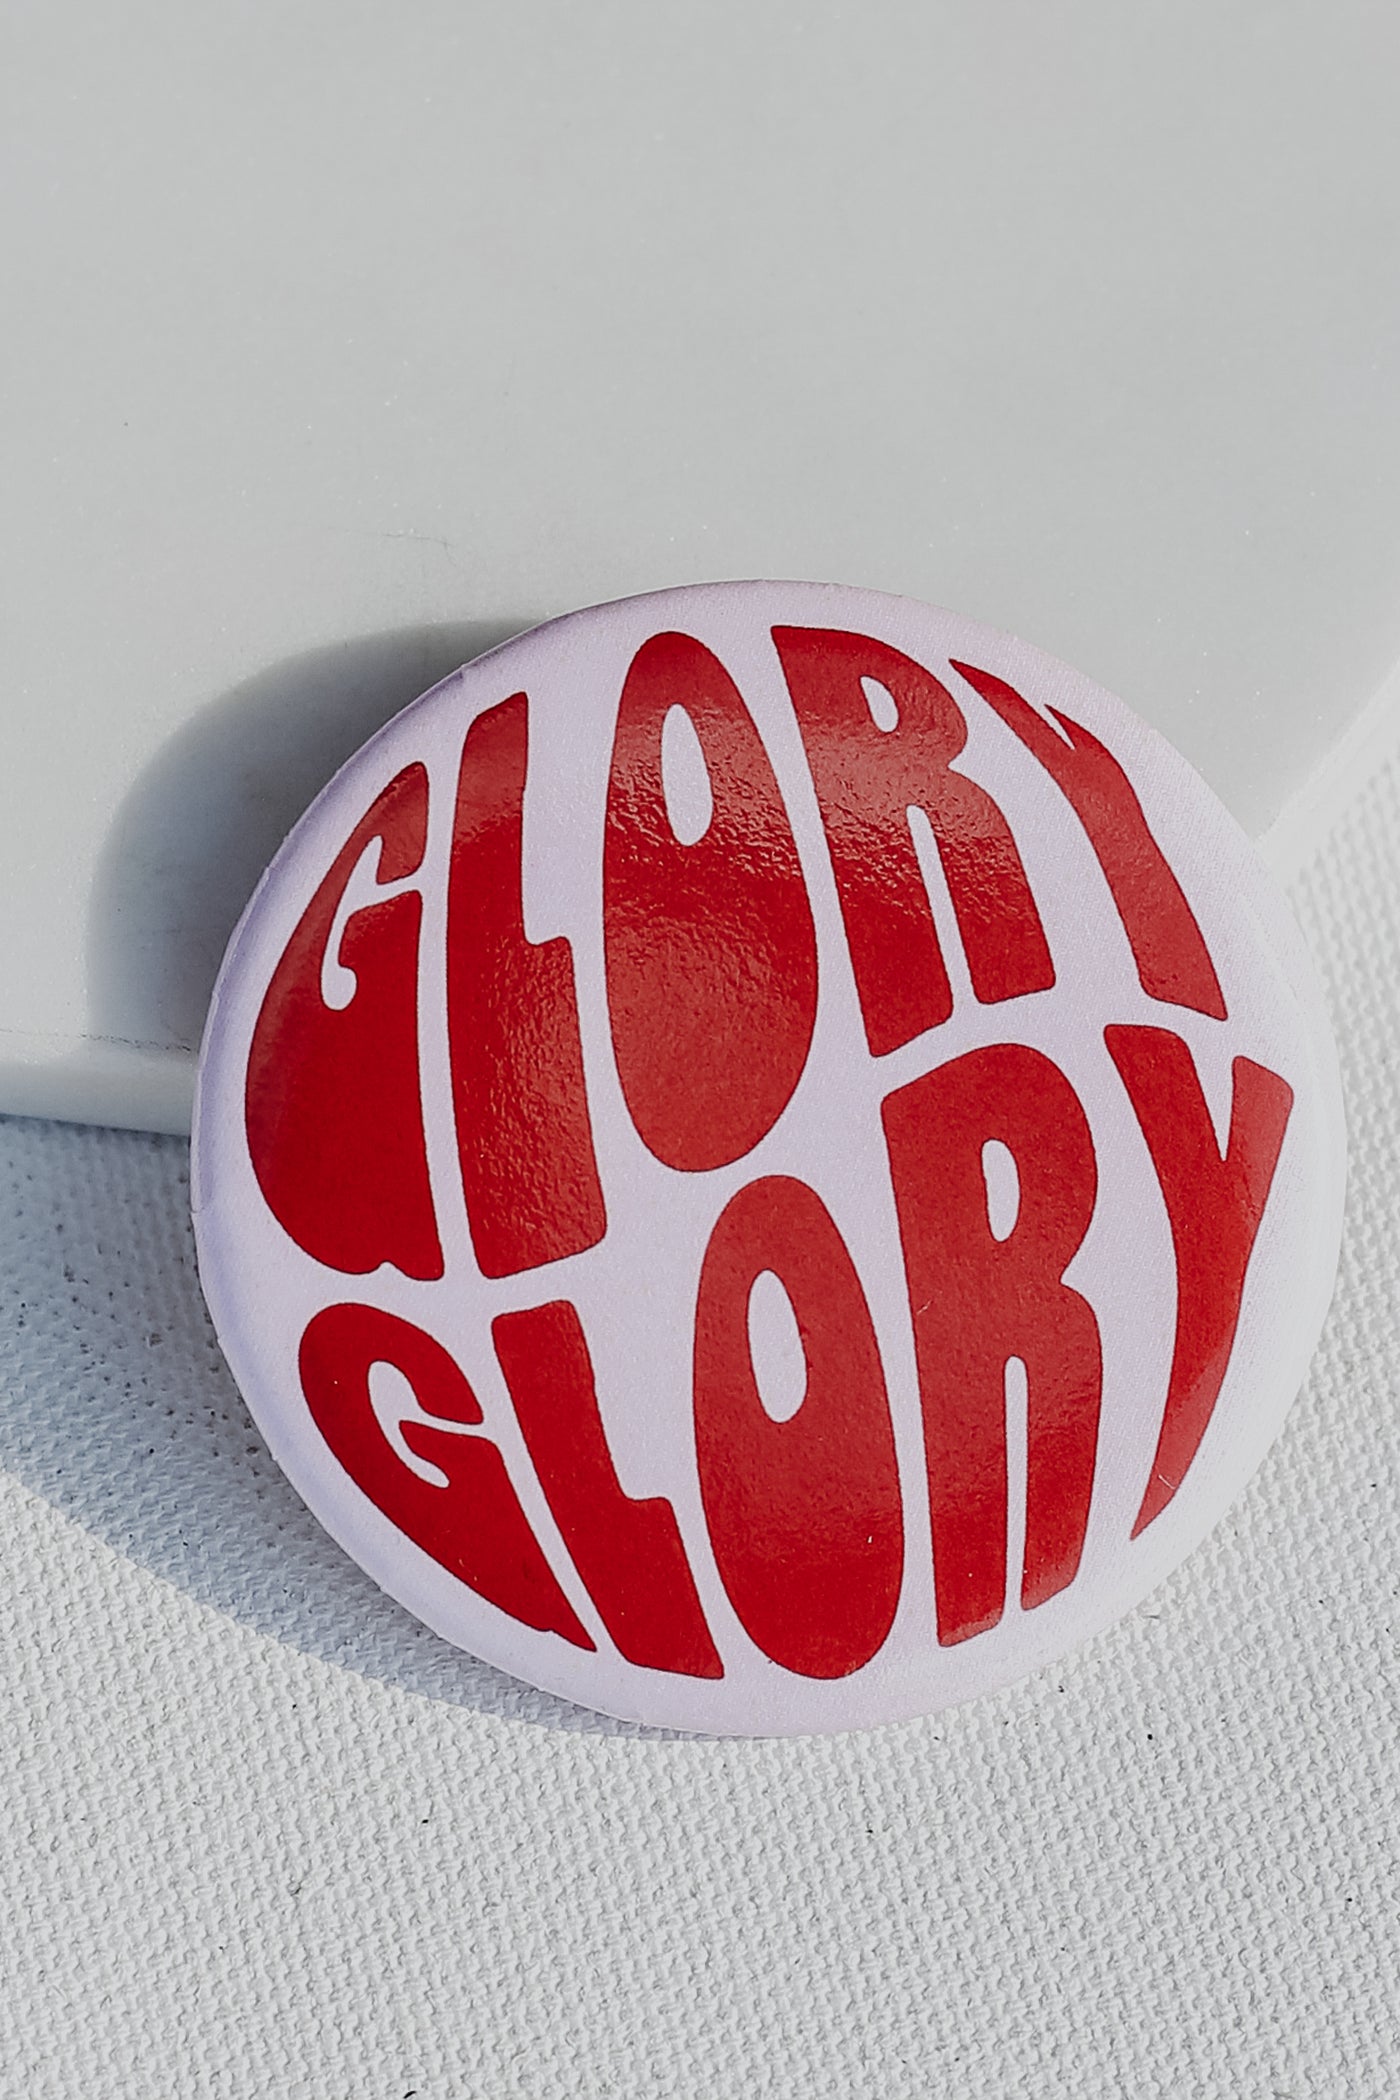 Blush Glory Glory Button